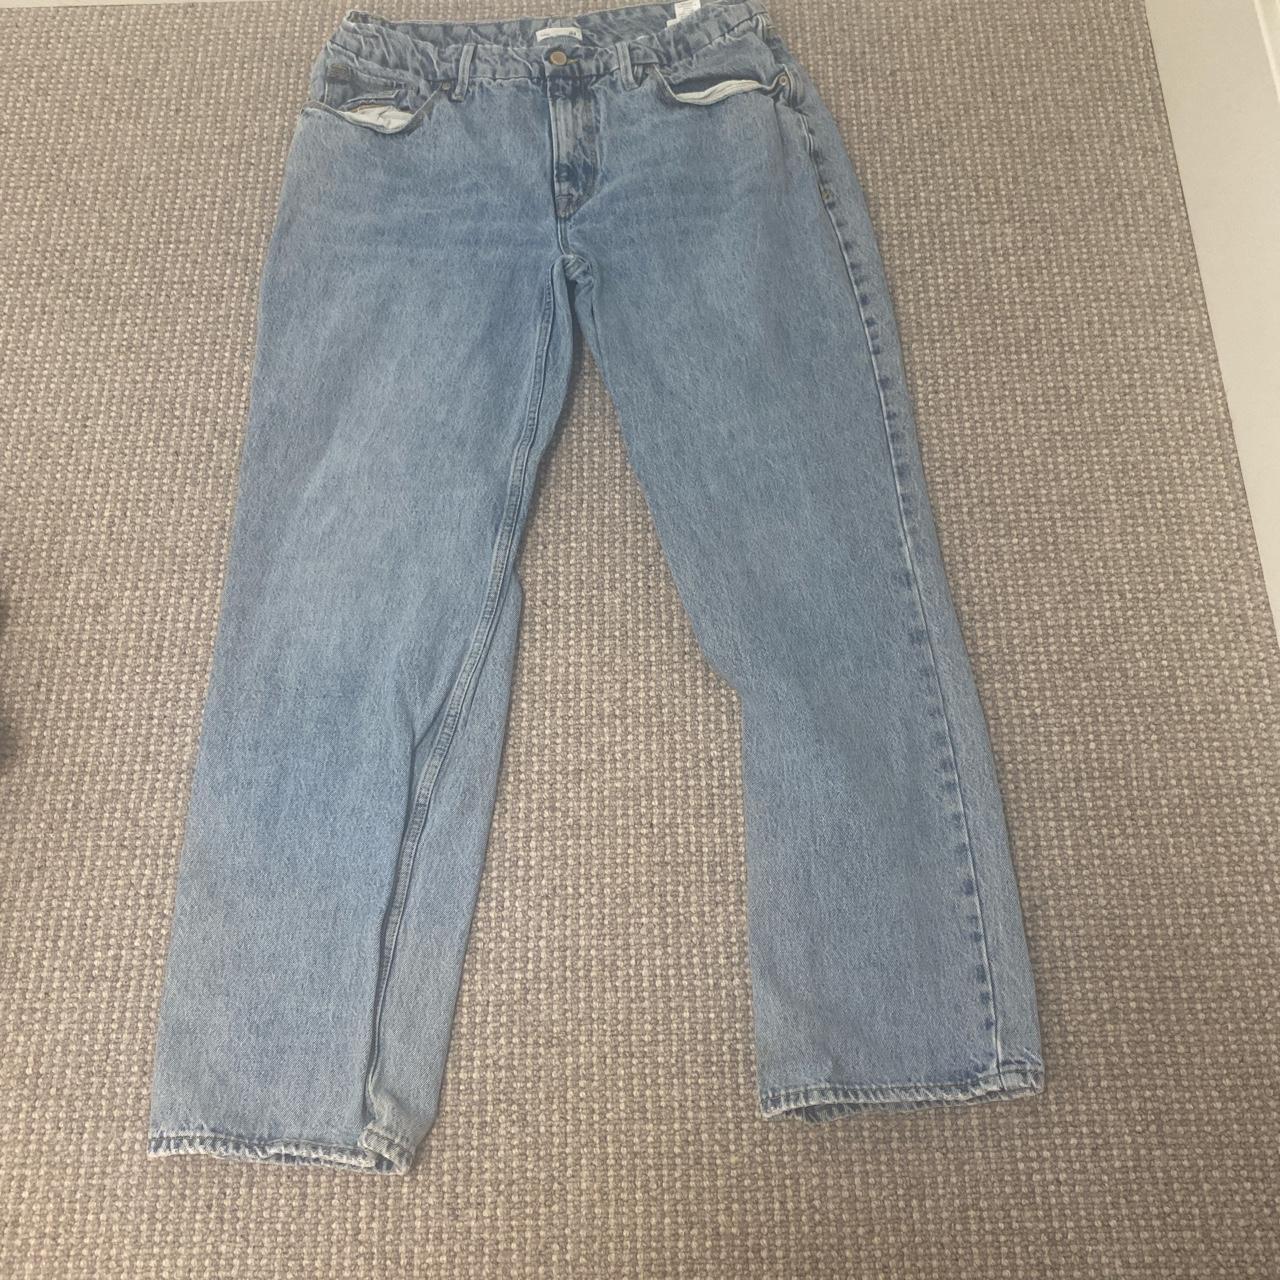 90s baggy jeans #vintage - Depop